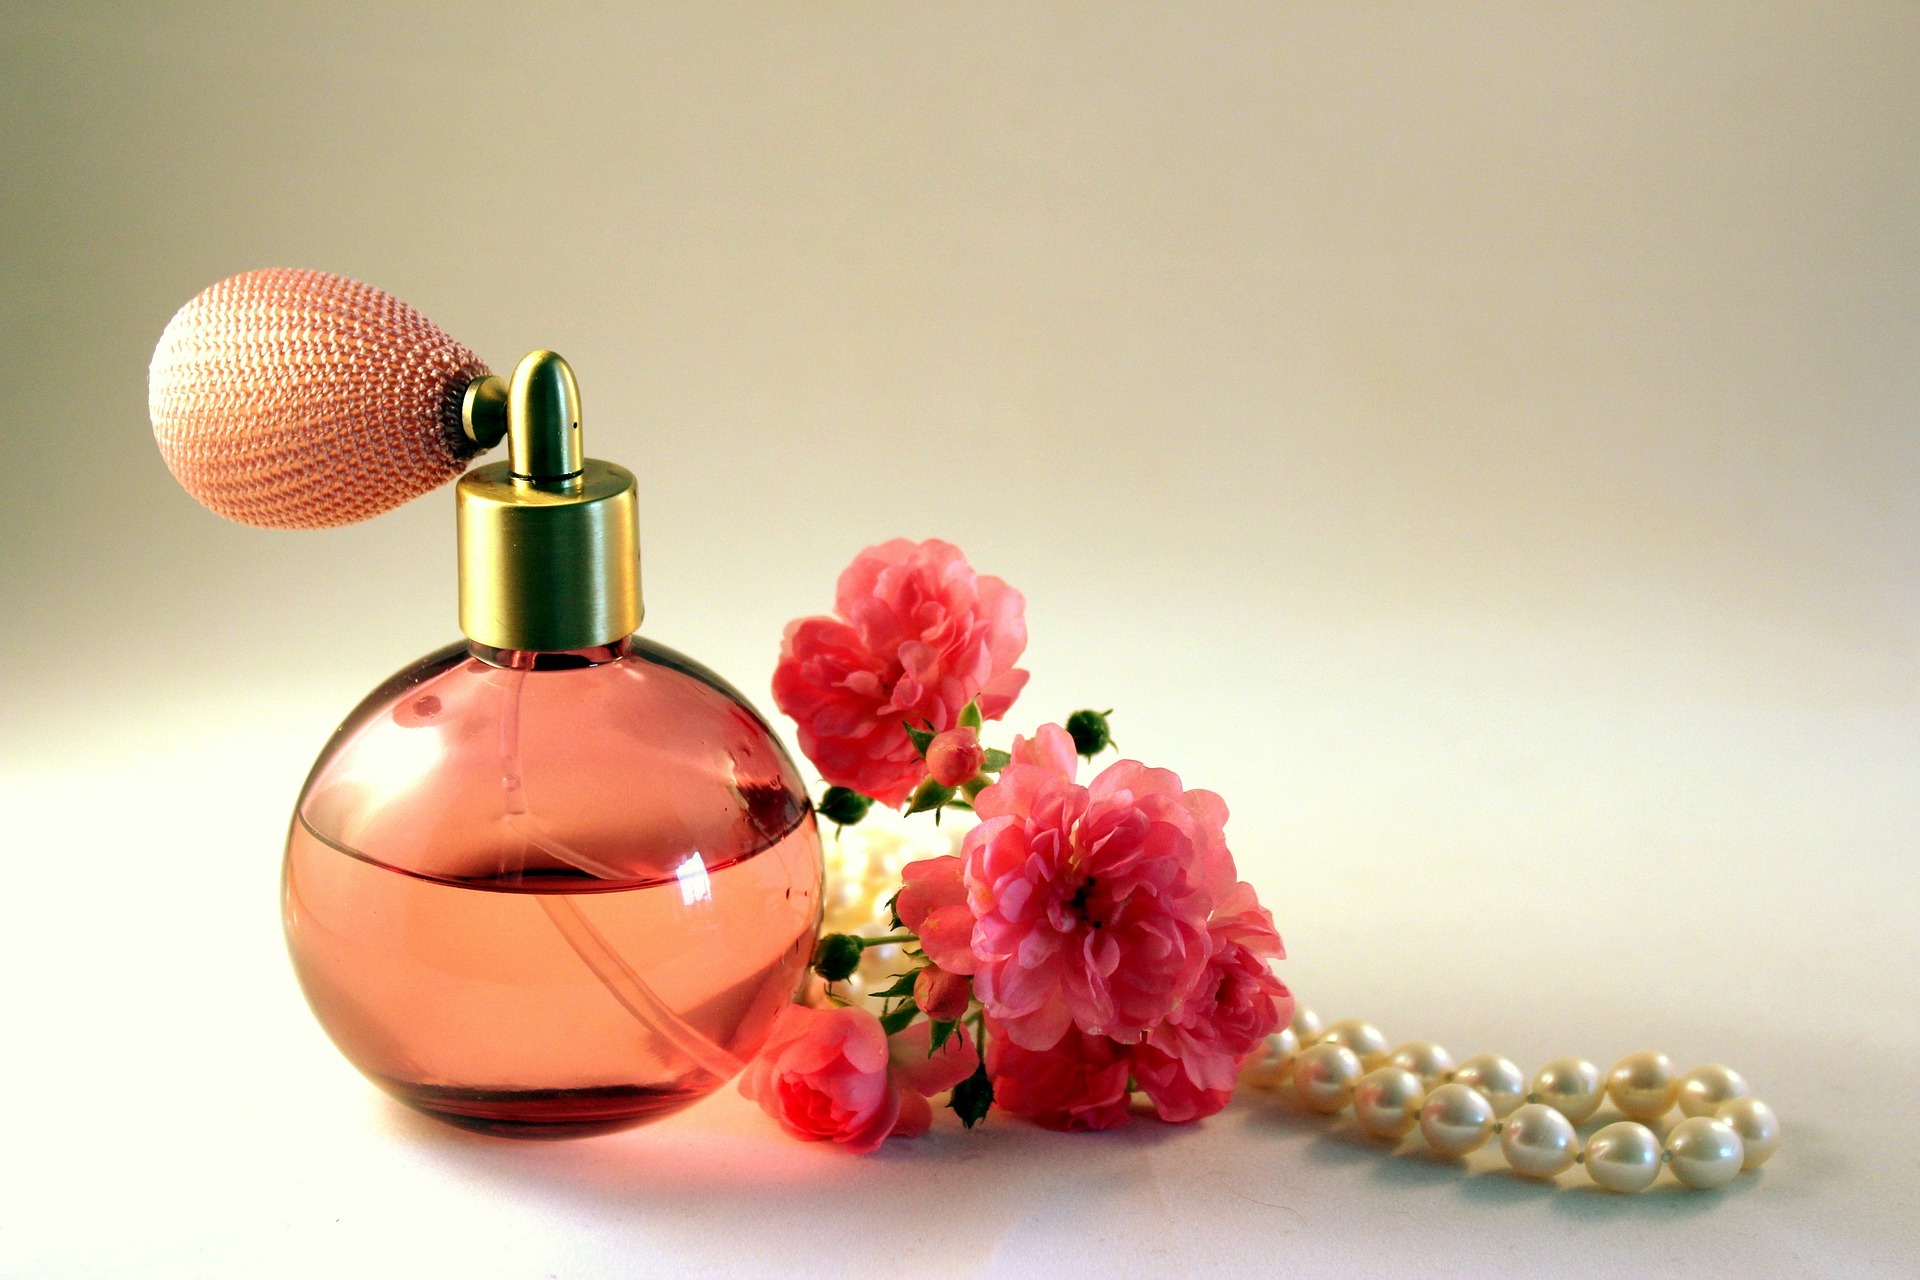 Perfumeria internetowa – szybkie i pewne zakupy